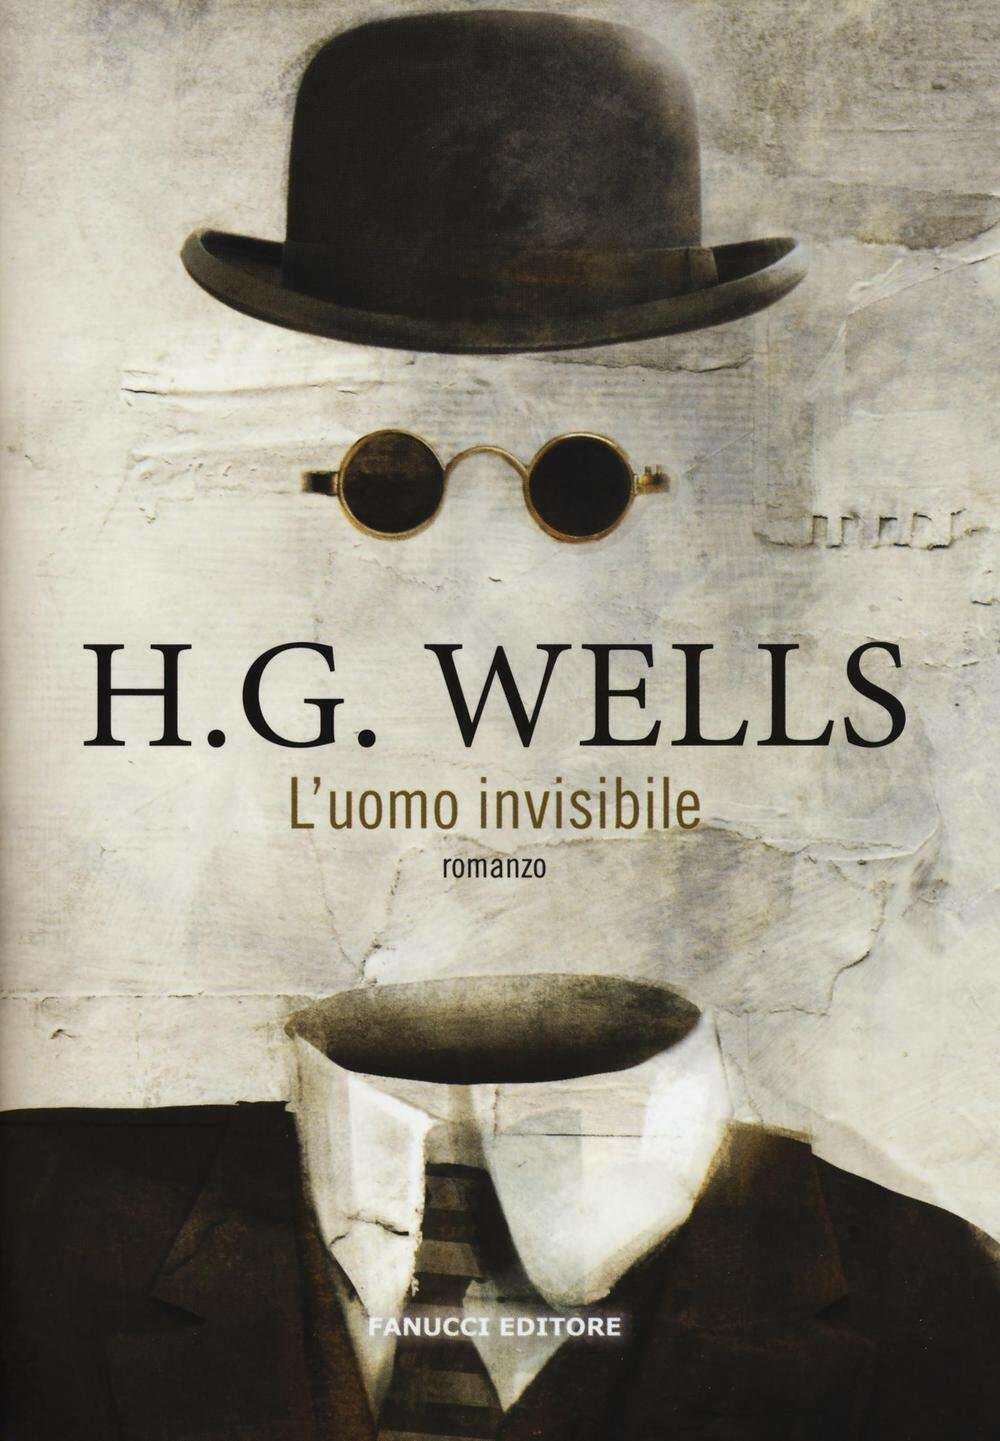 La copertina de L'uomo invisibile, romanzo del 1881 di H.G. Wells